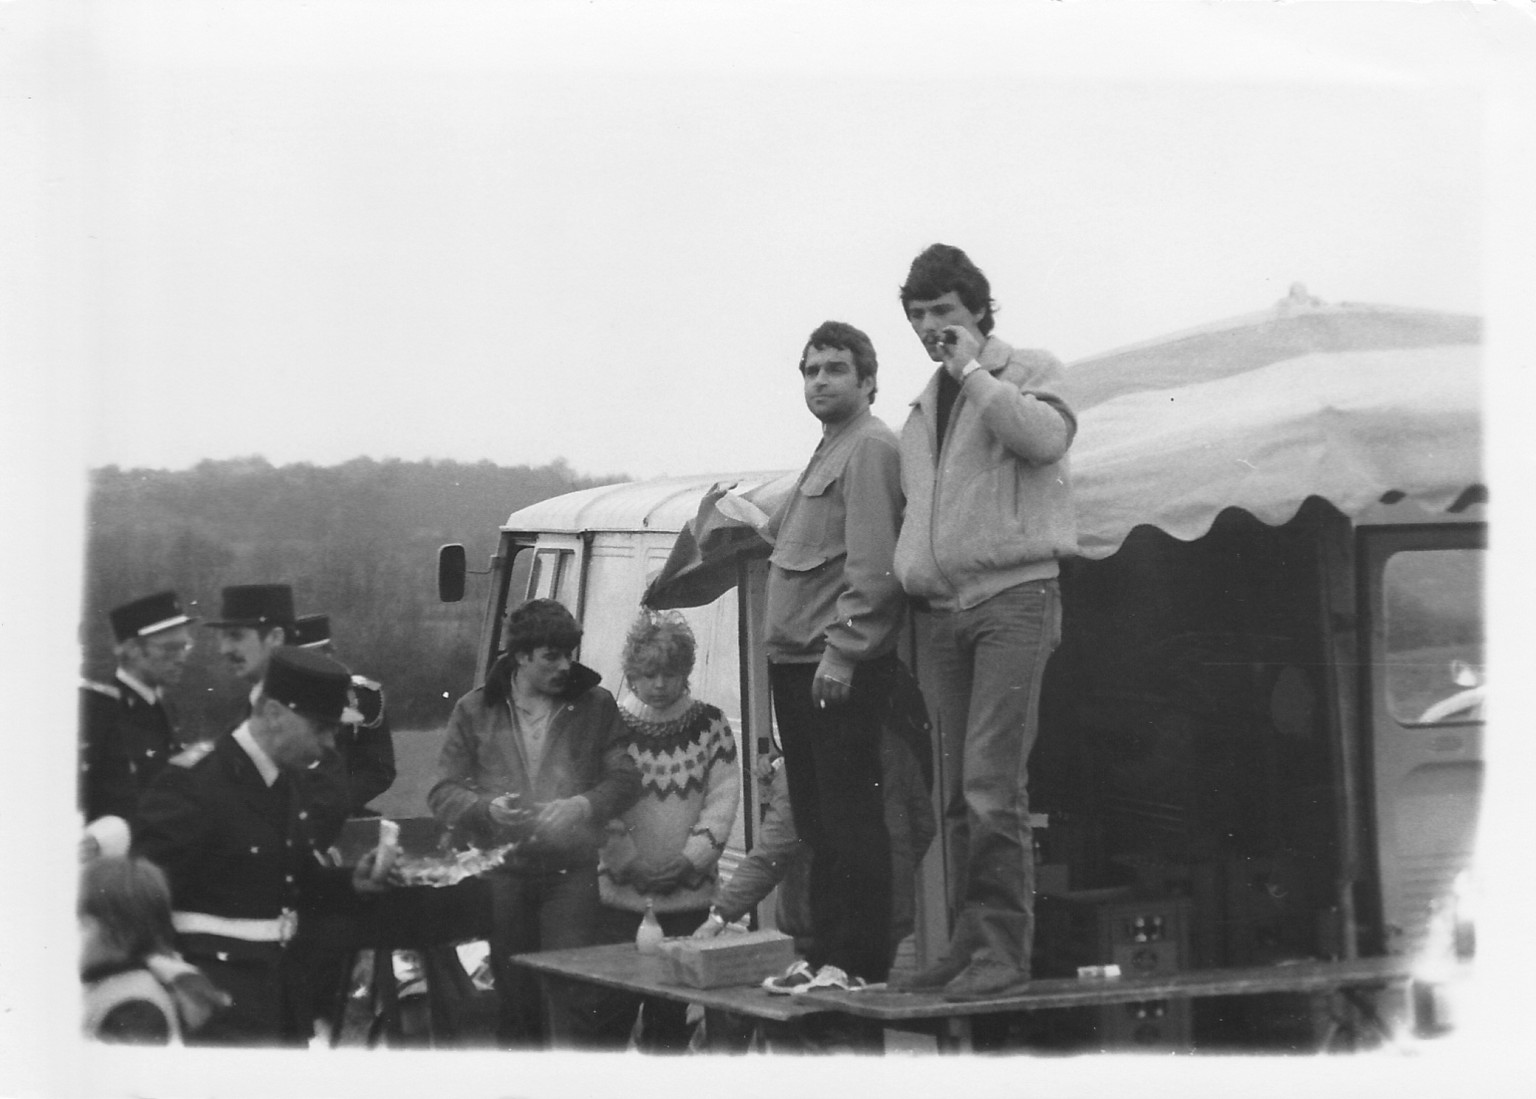 1983 spectacle cascade Rémy Julienne  sur l'ancienne route entre Morvillars et Méziré  (maintenant chemin parking et monument) j'avais monter une buvette  (je suis a coté des pompiers )